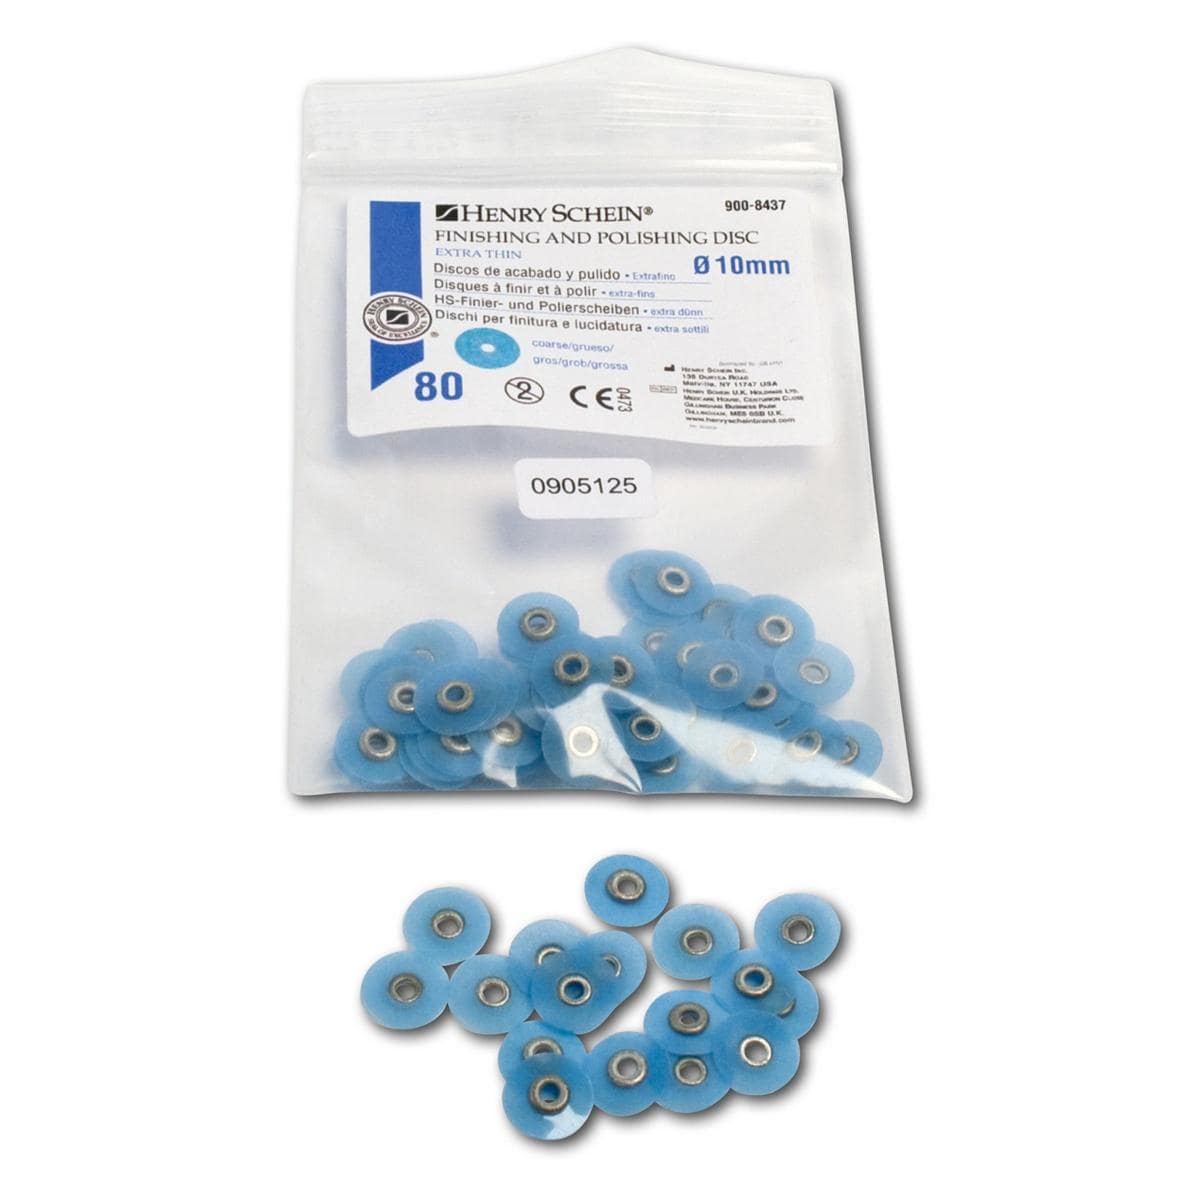 HS-Finier- und Polierscheiben extradünn - Nachfüllpackung - Blau - grob, Ø 10 mm, Packung 80 Stück